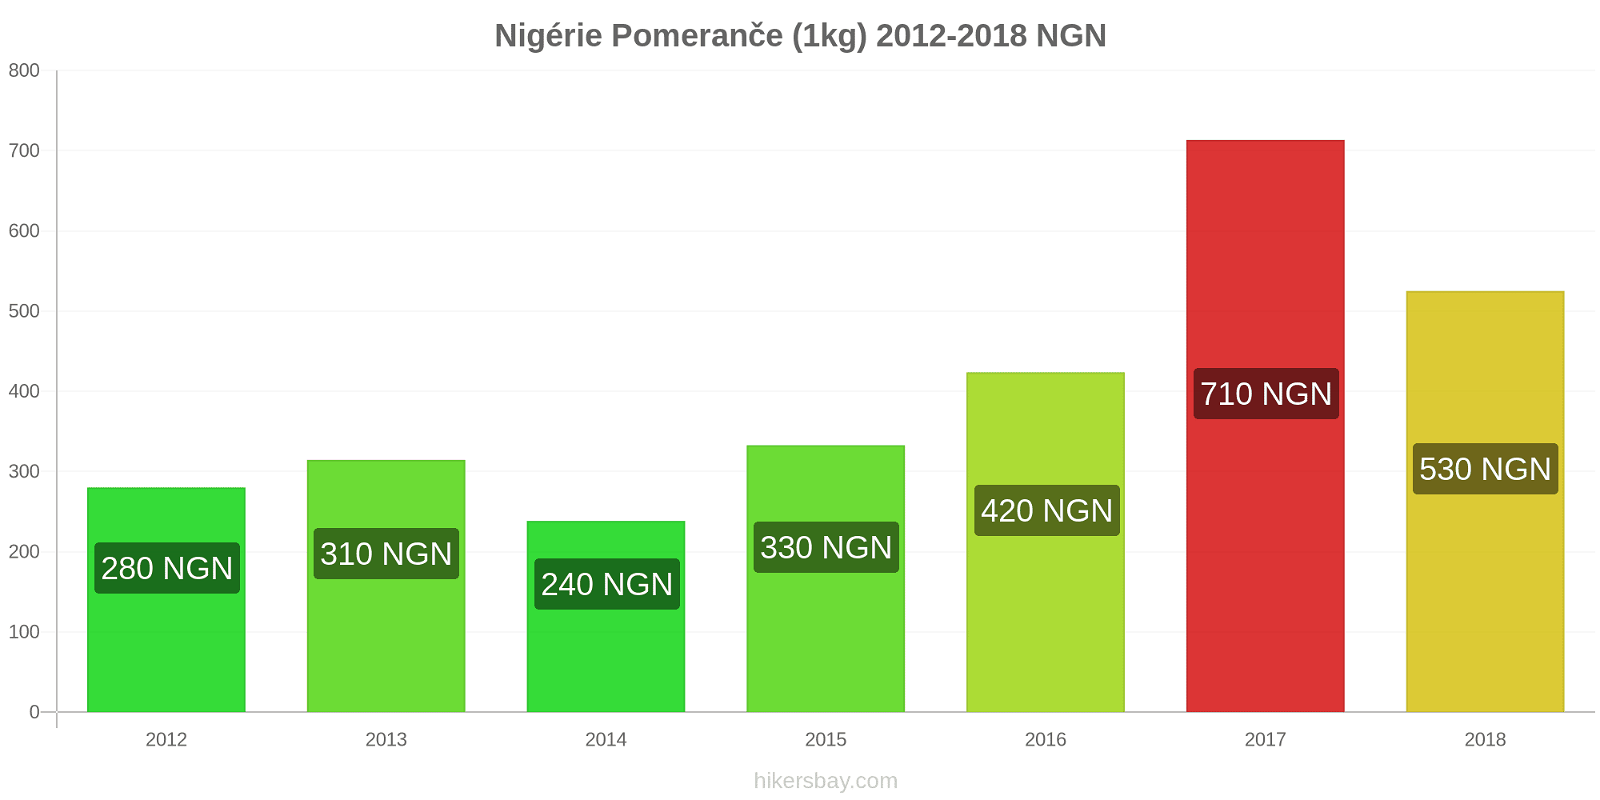 Nigérie změny cen Pomeranče (1kg) hikersbay.com